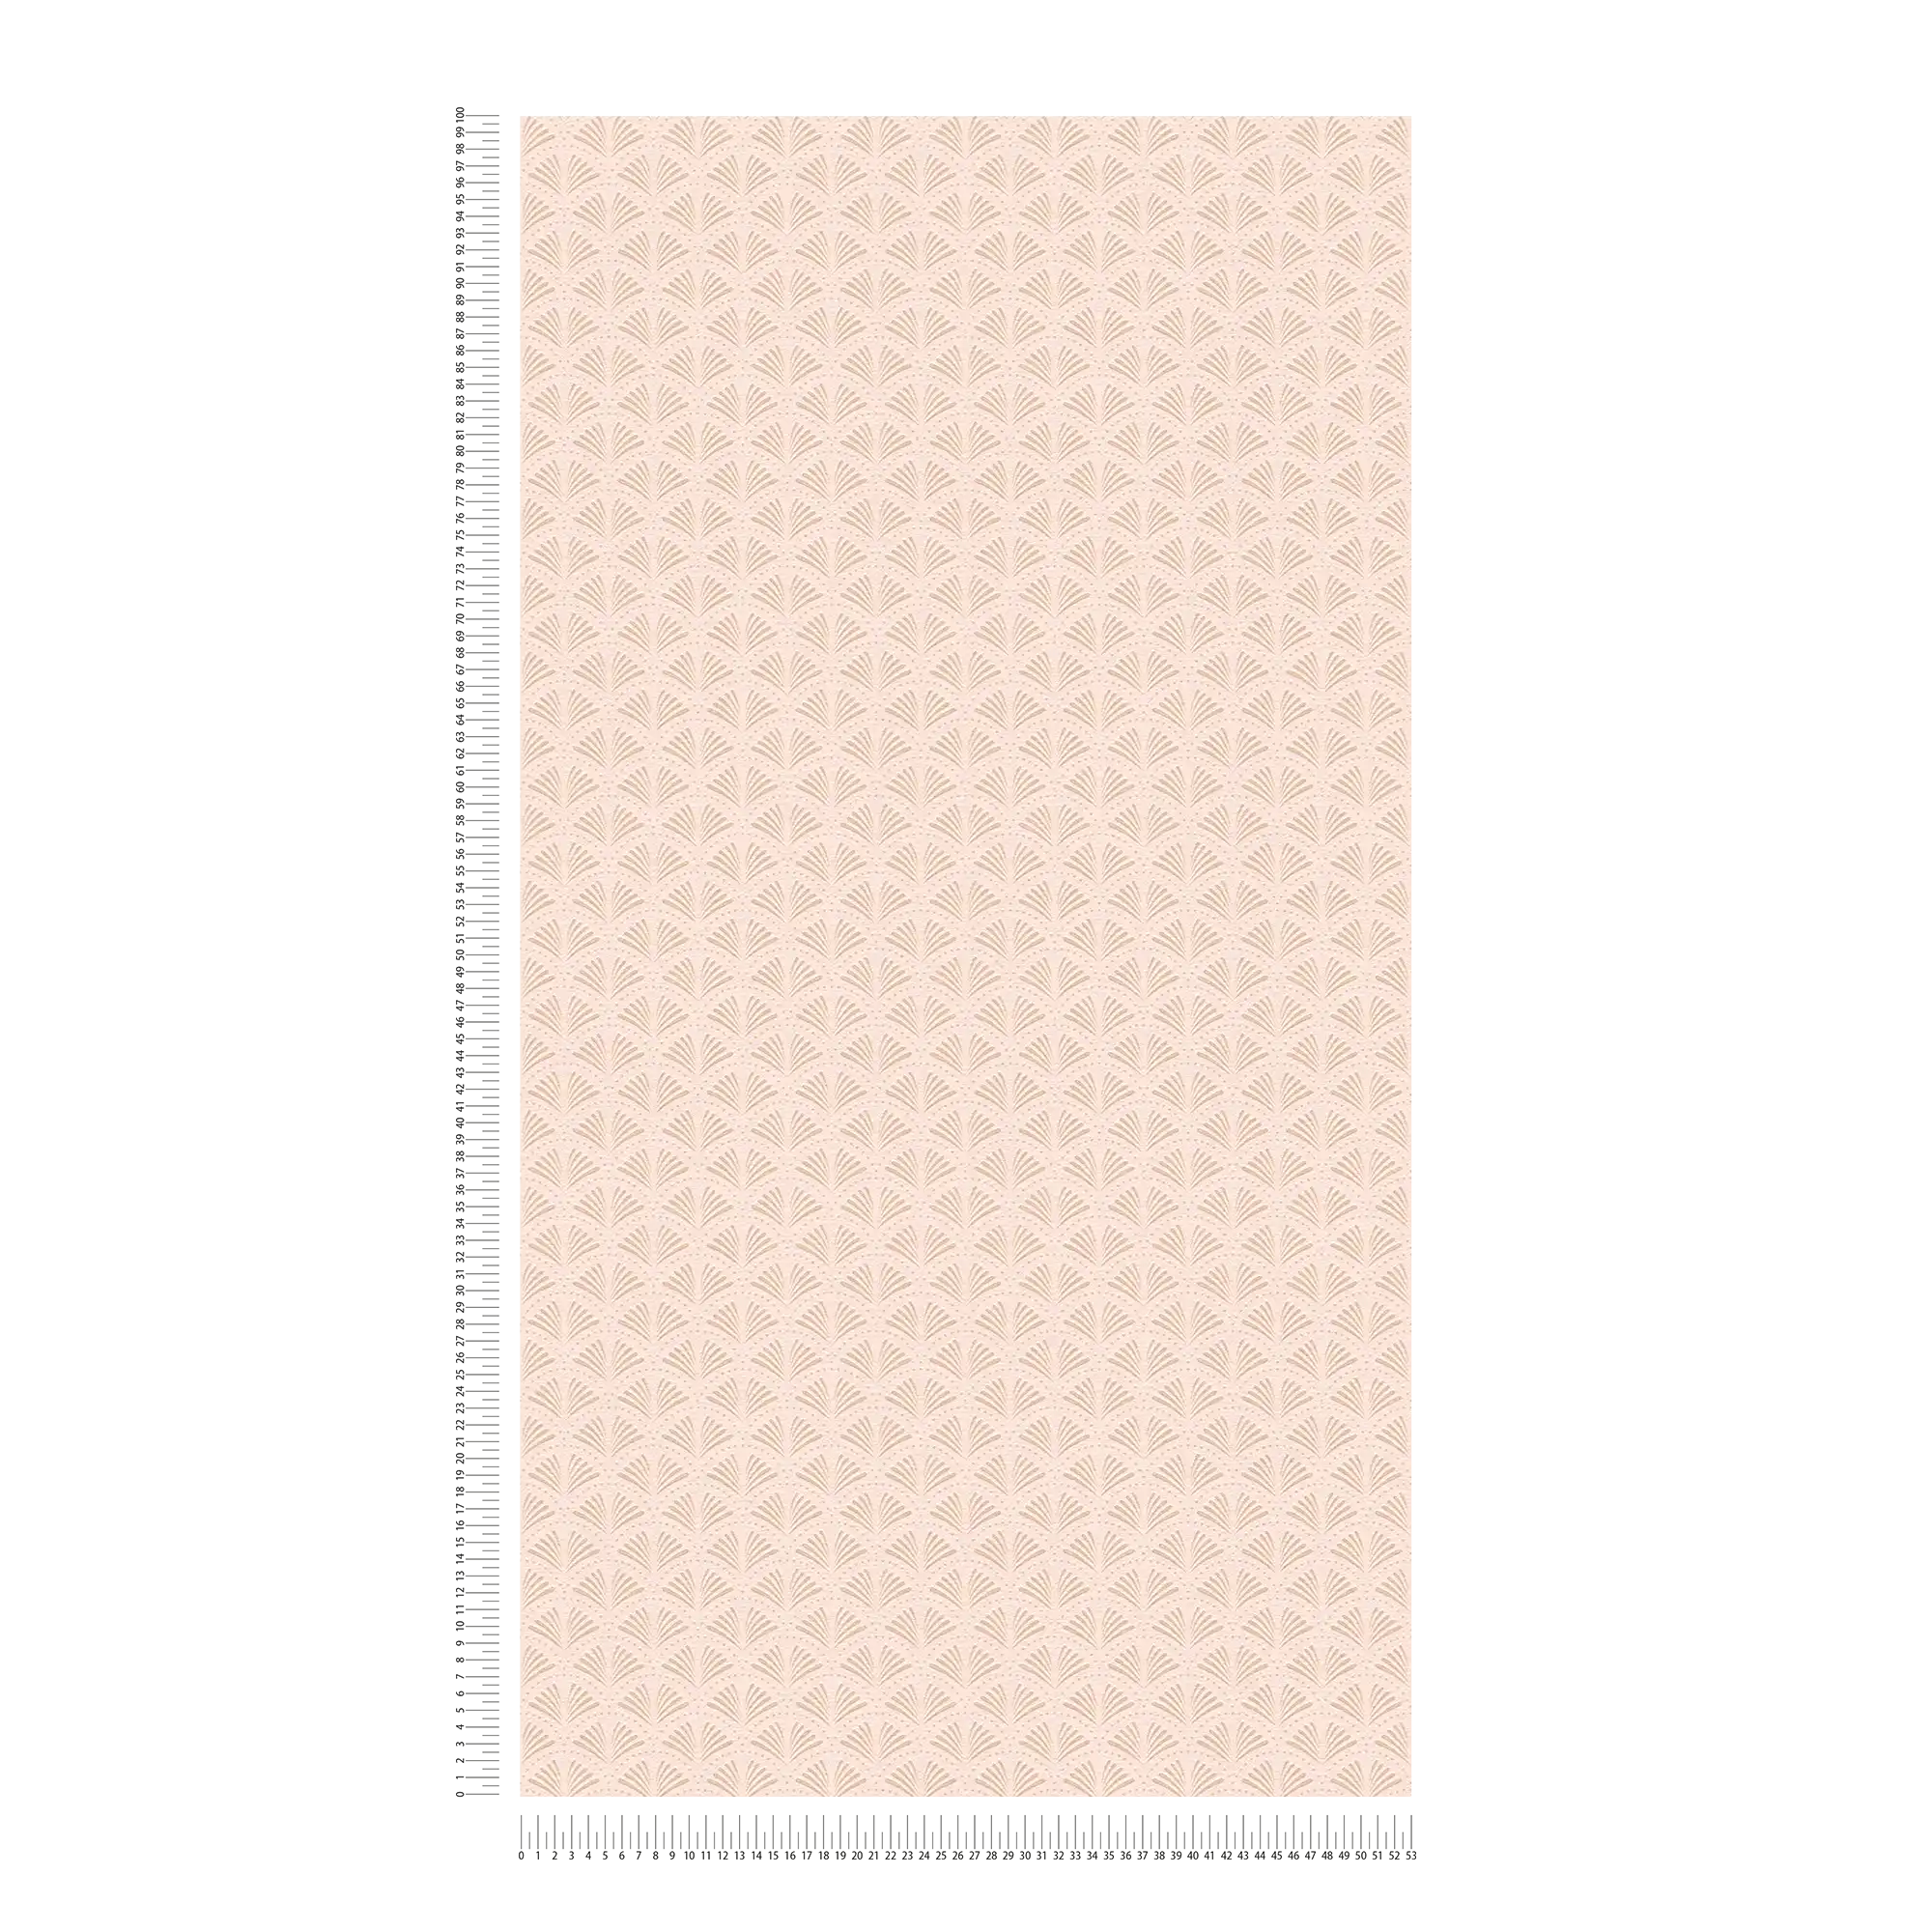             Papier peint intissé rose avec motifs structurés et métallisés - crème, métallisé, rose
        